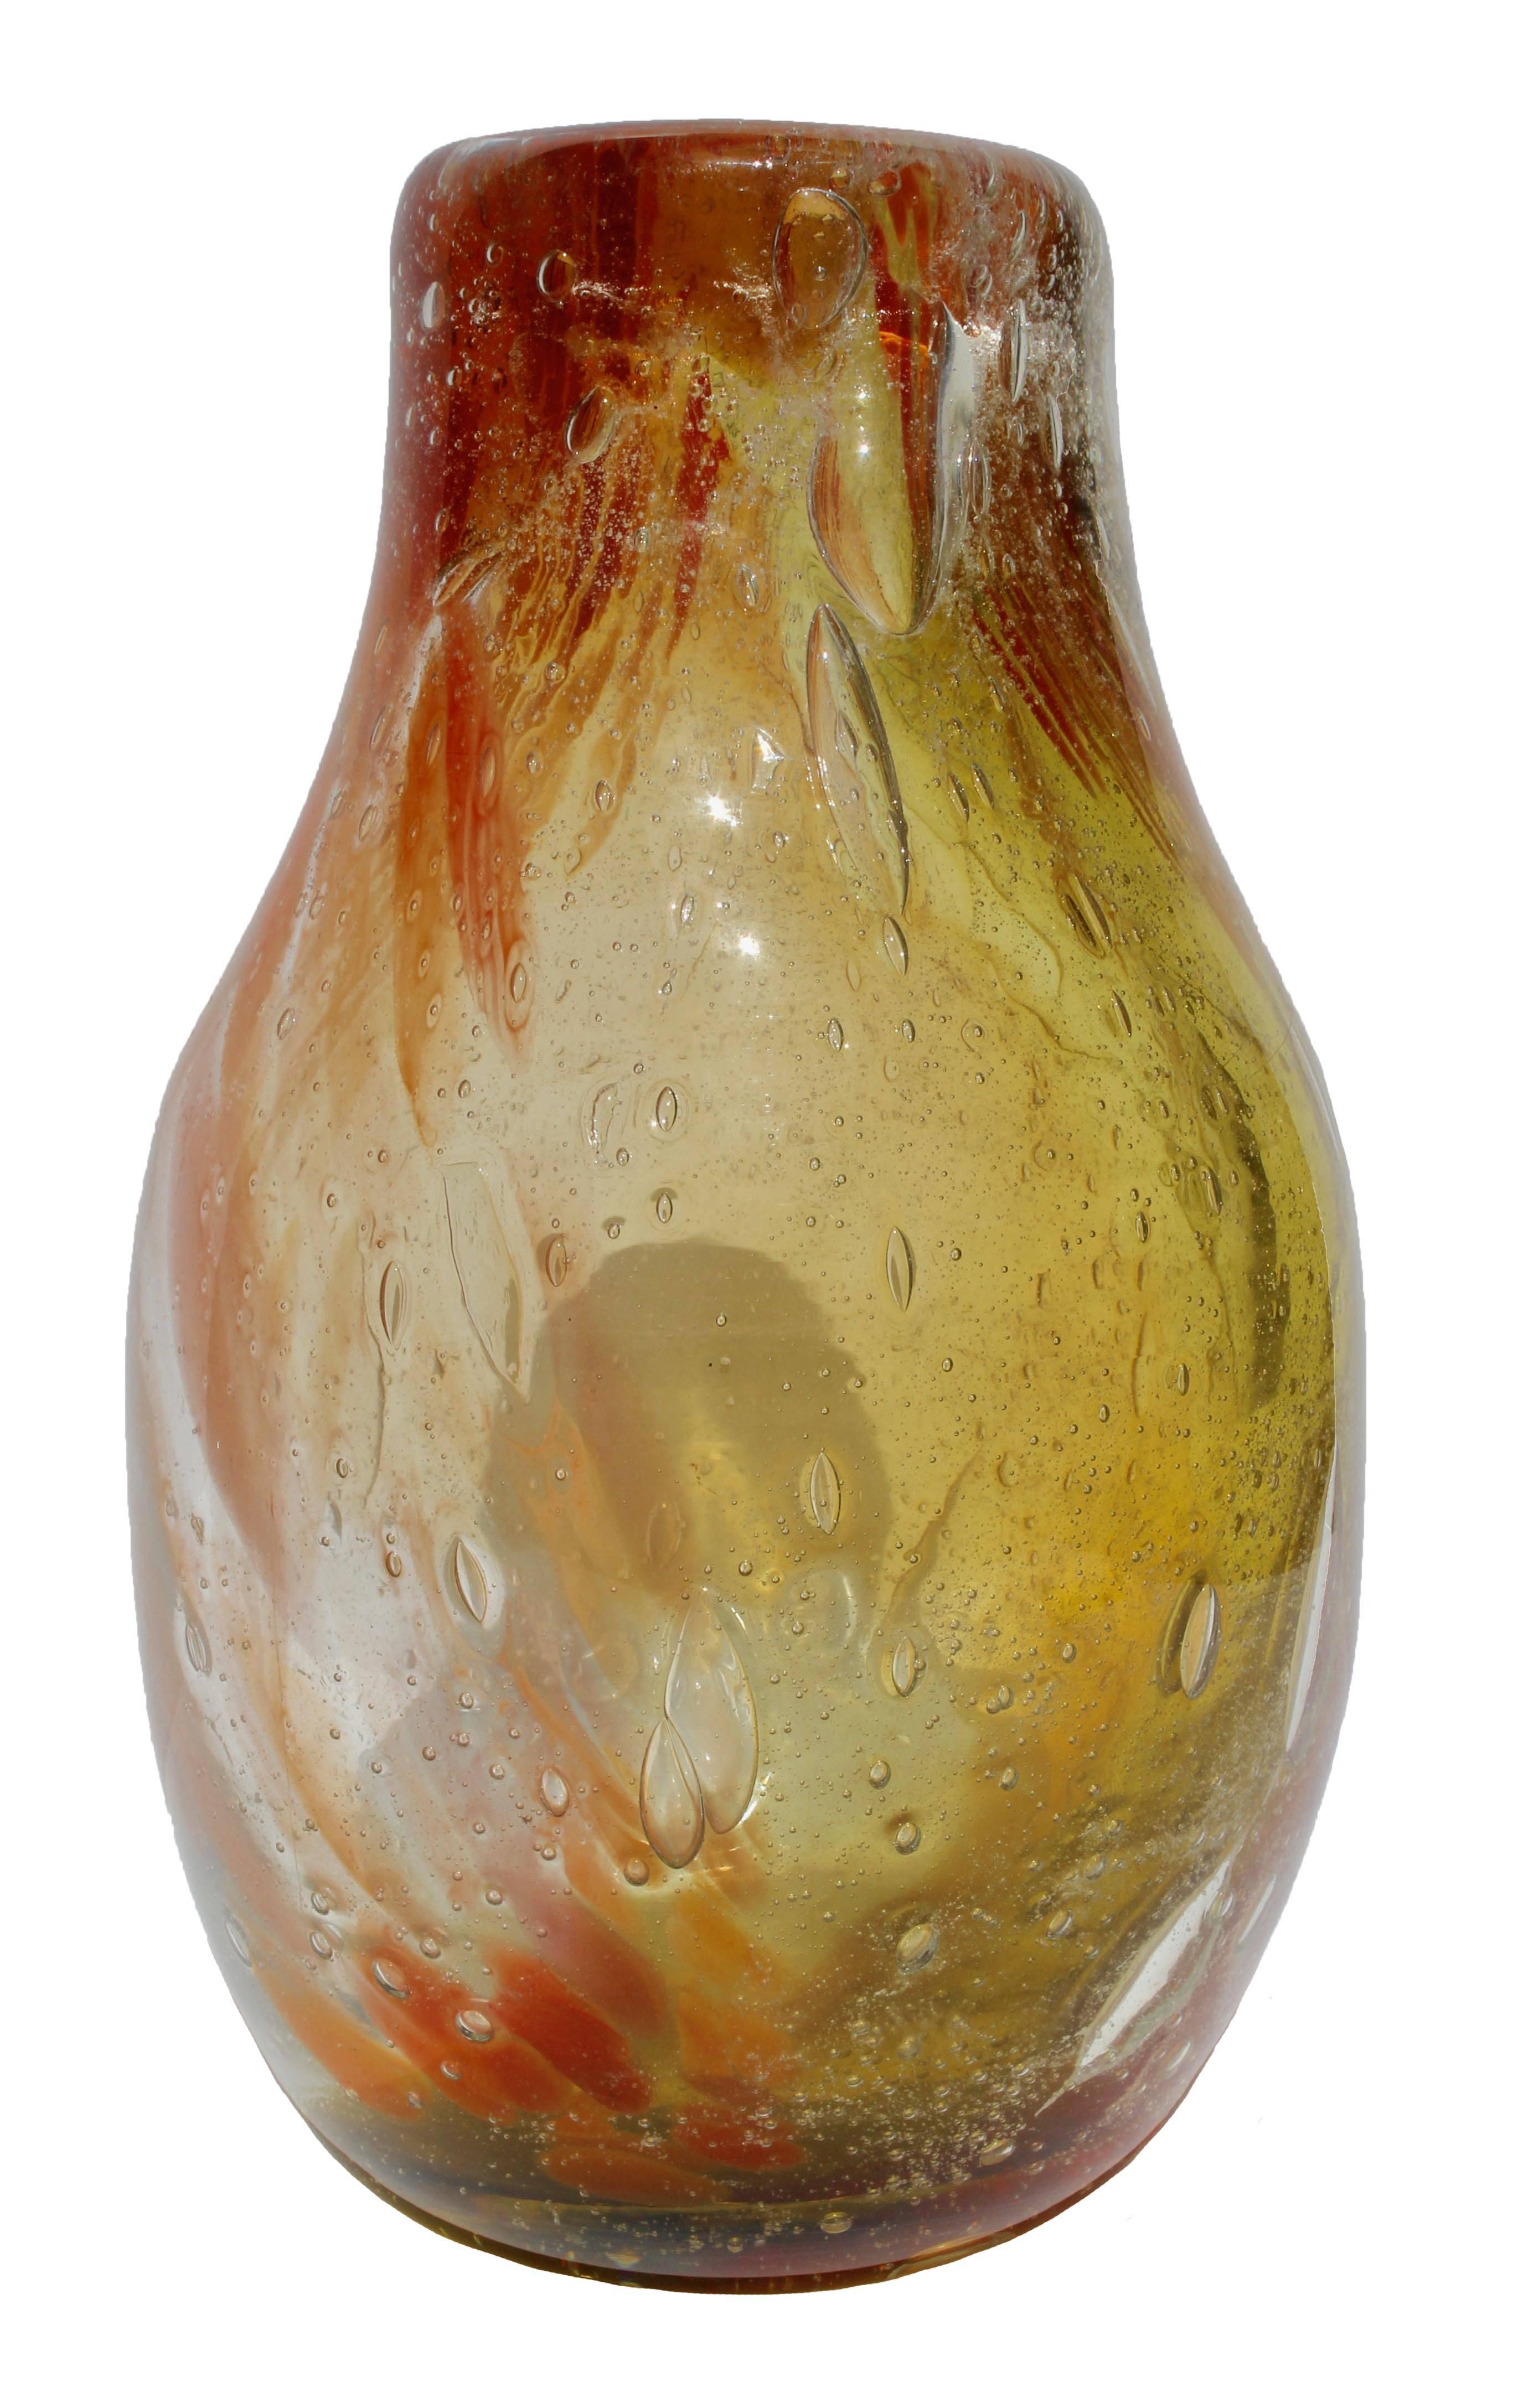 Das Stück ist einzigartig.

Vase aus Klarglas in schwerem Stil mit eingebetteten Farbpulvern und unregelmäßig geformten Luftblasen, ausgeführt in der Heißwerkstatt in Val St Lambert, Belgien.
Das Stück ist einzigartig, in ausgezeichnetem Zustand und